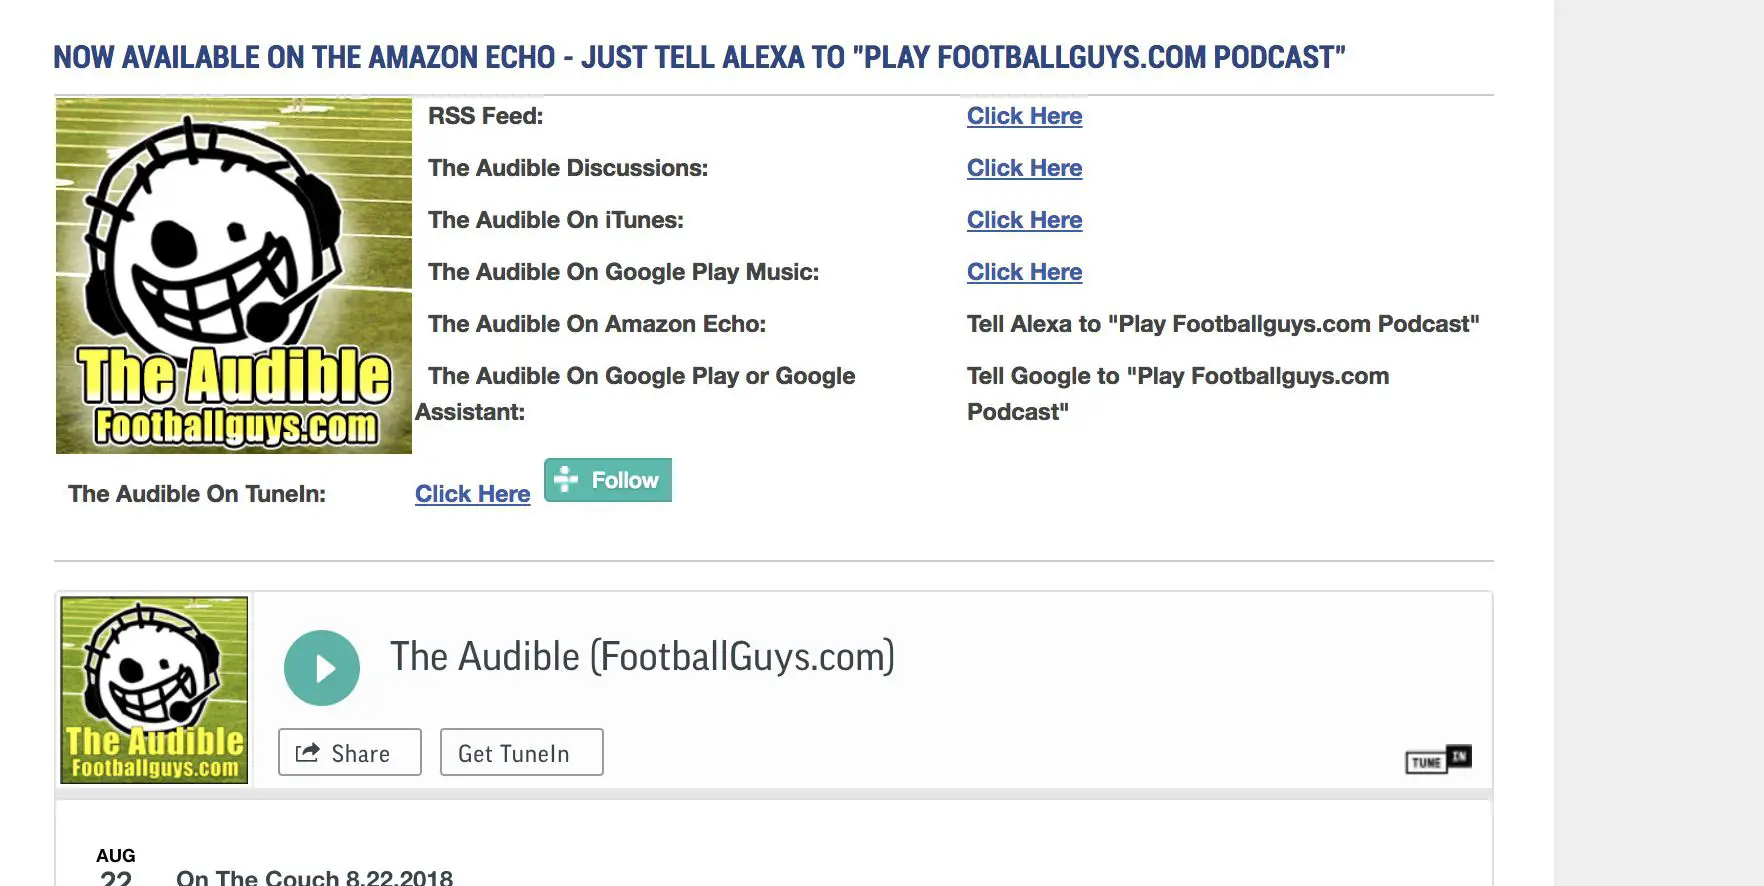 Captura de tela da página inicial do podcast de futebol de fantasia The Audble.